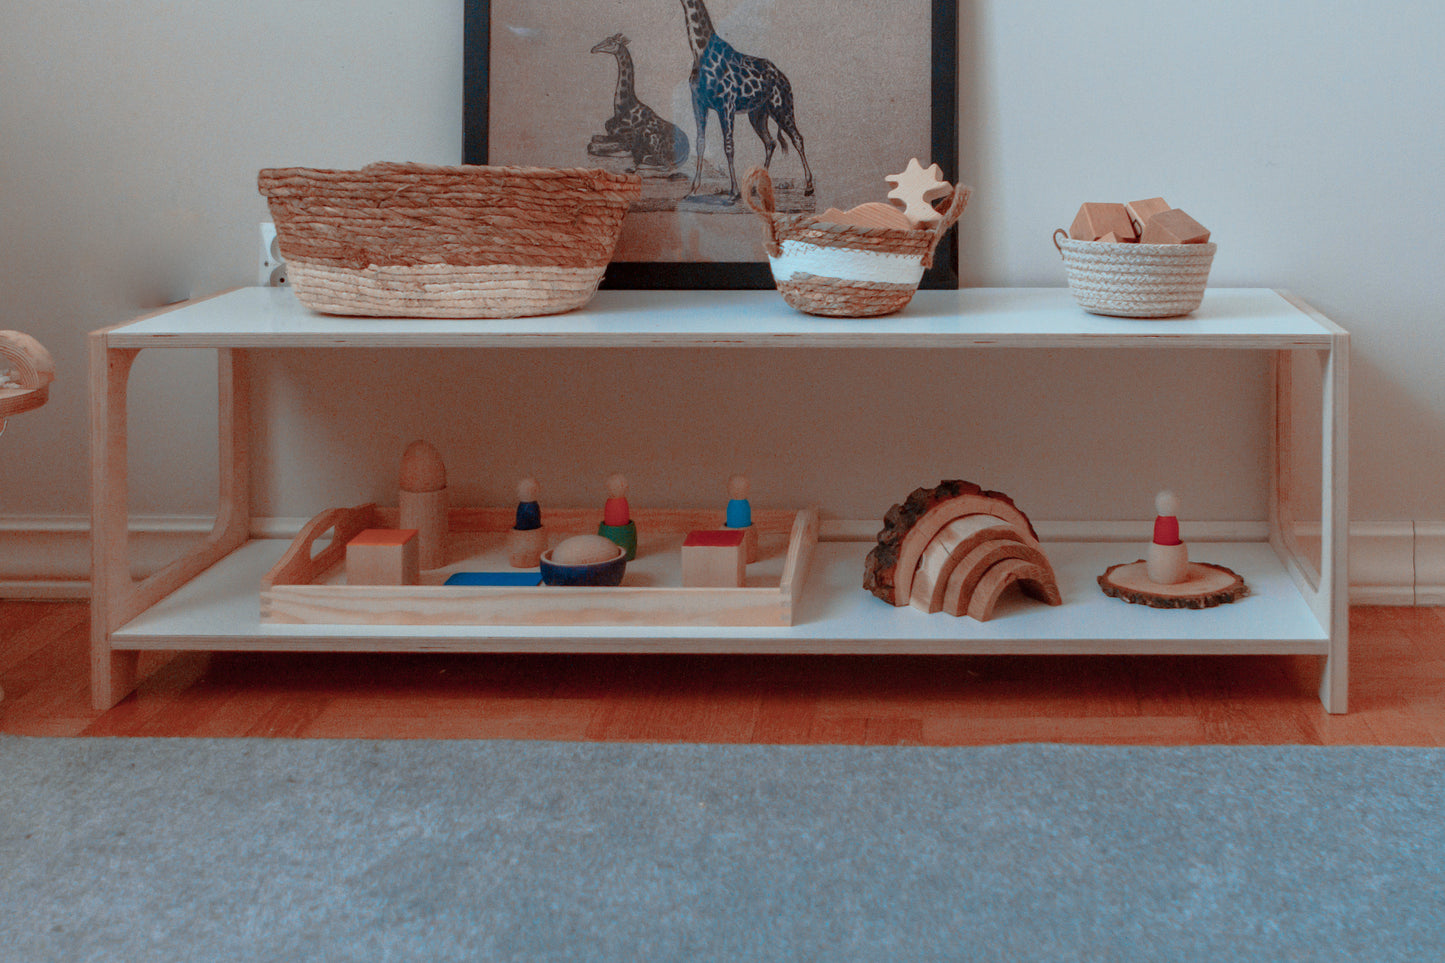 HINGI ORI Baby Shelf